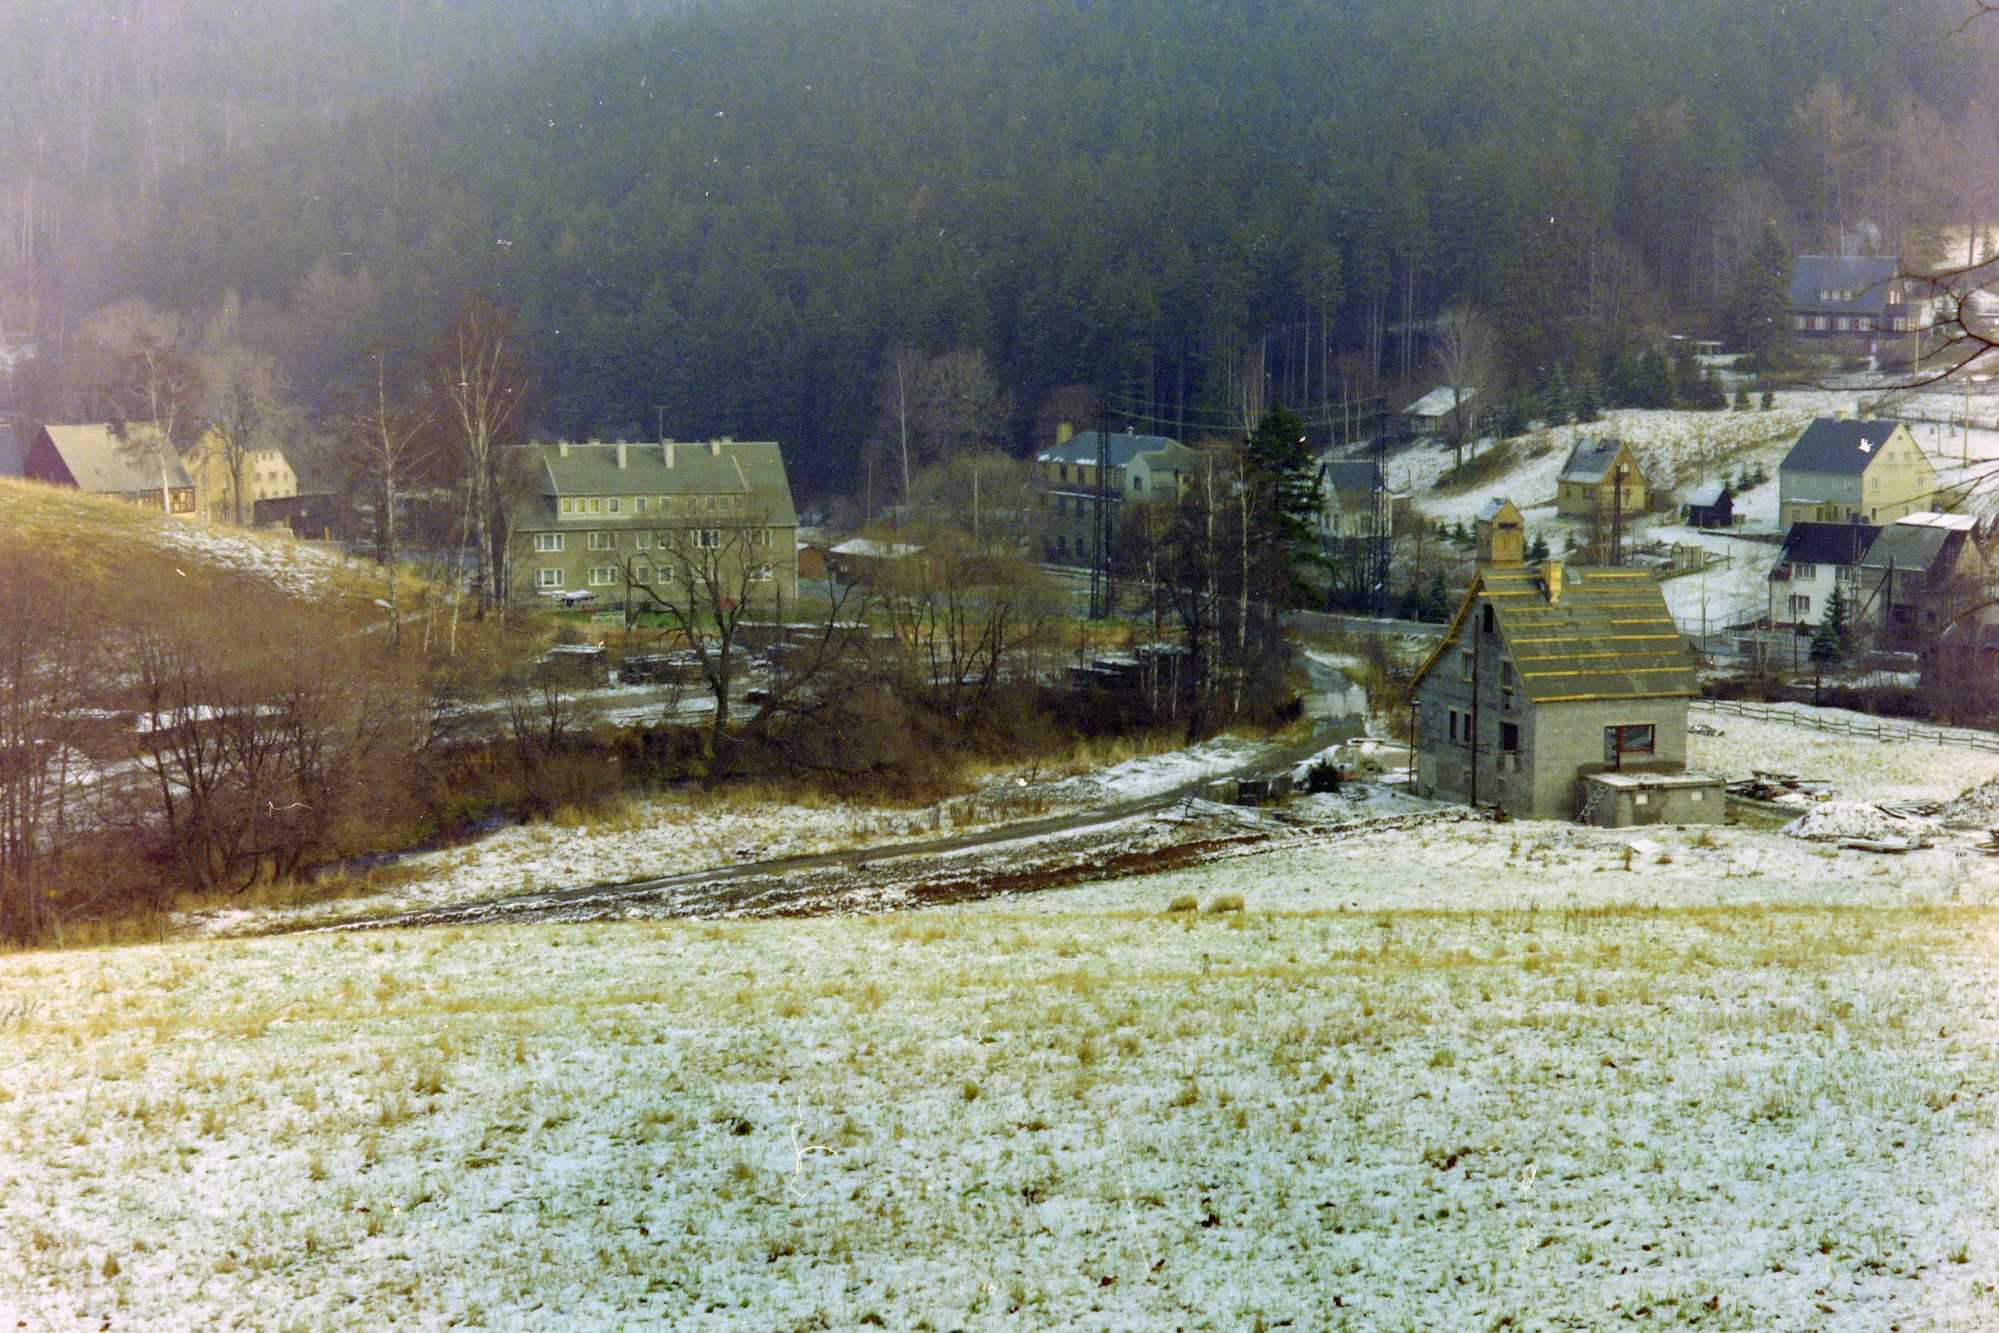 Die berühmte Foto-Kurve in Schmalzgrube wurde im Sommer 1990 mit dem Bau eines Wohnhauses direkt neben dem Bahndamm verändert. Dass der Bahndamm davon unbeeinträchtigt blieb, stellte sich erst später heraus.